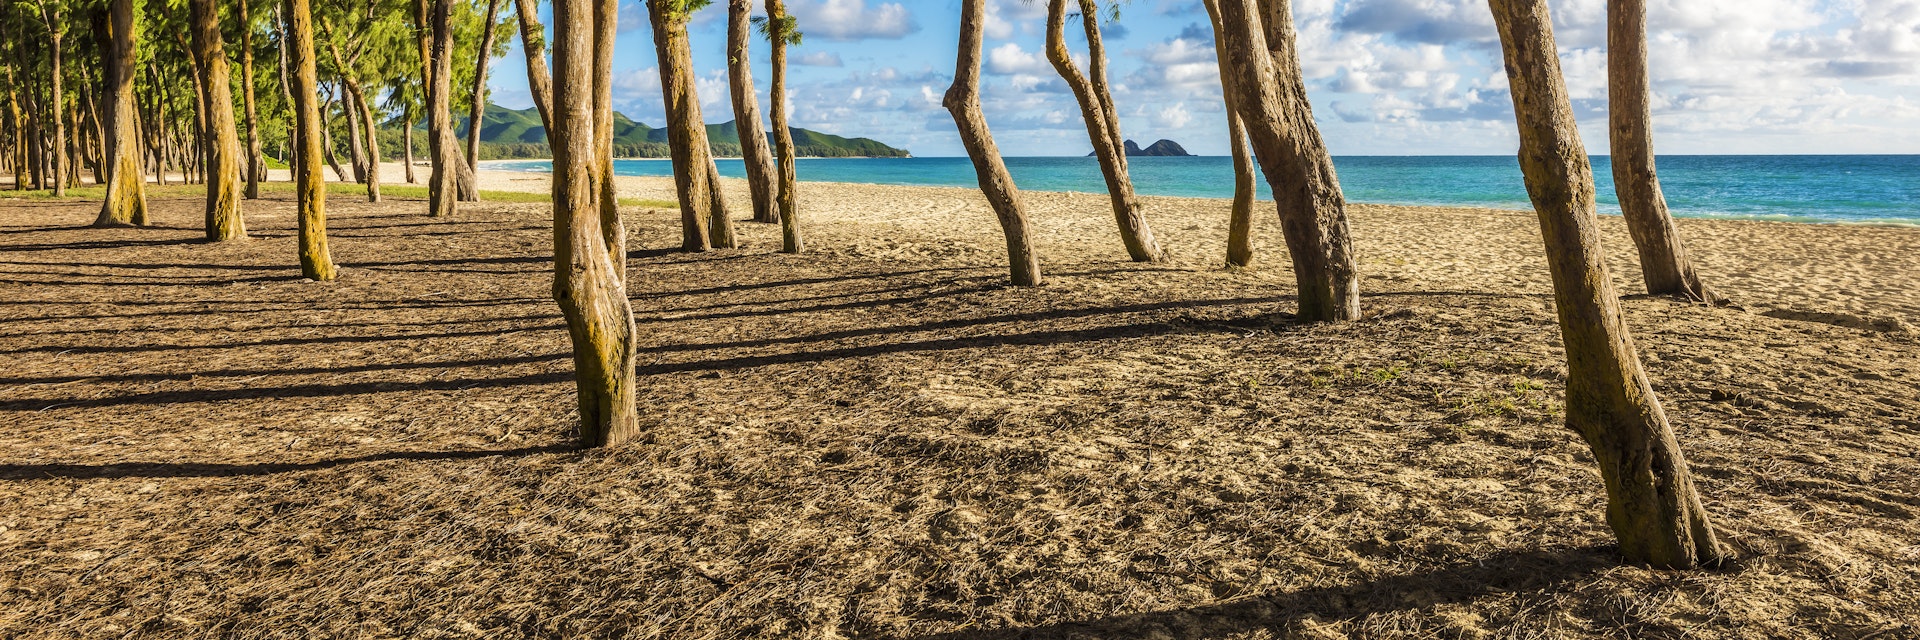 Ironwood trees lining up Waimanalo beach.
